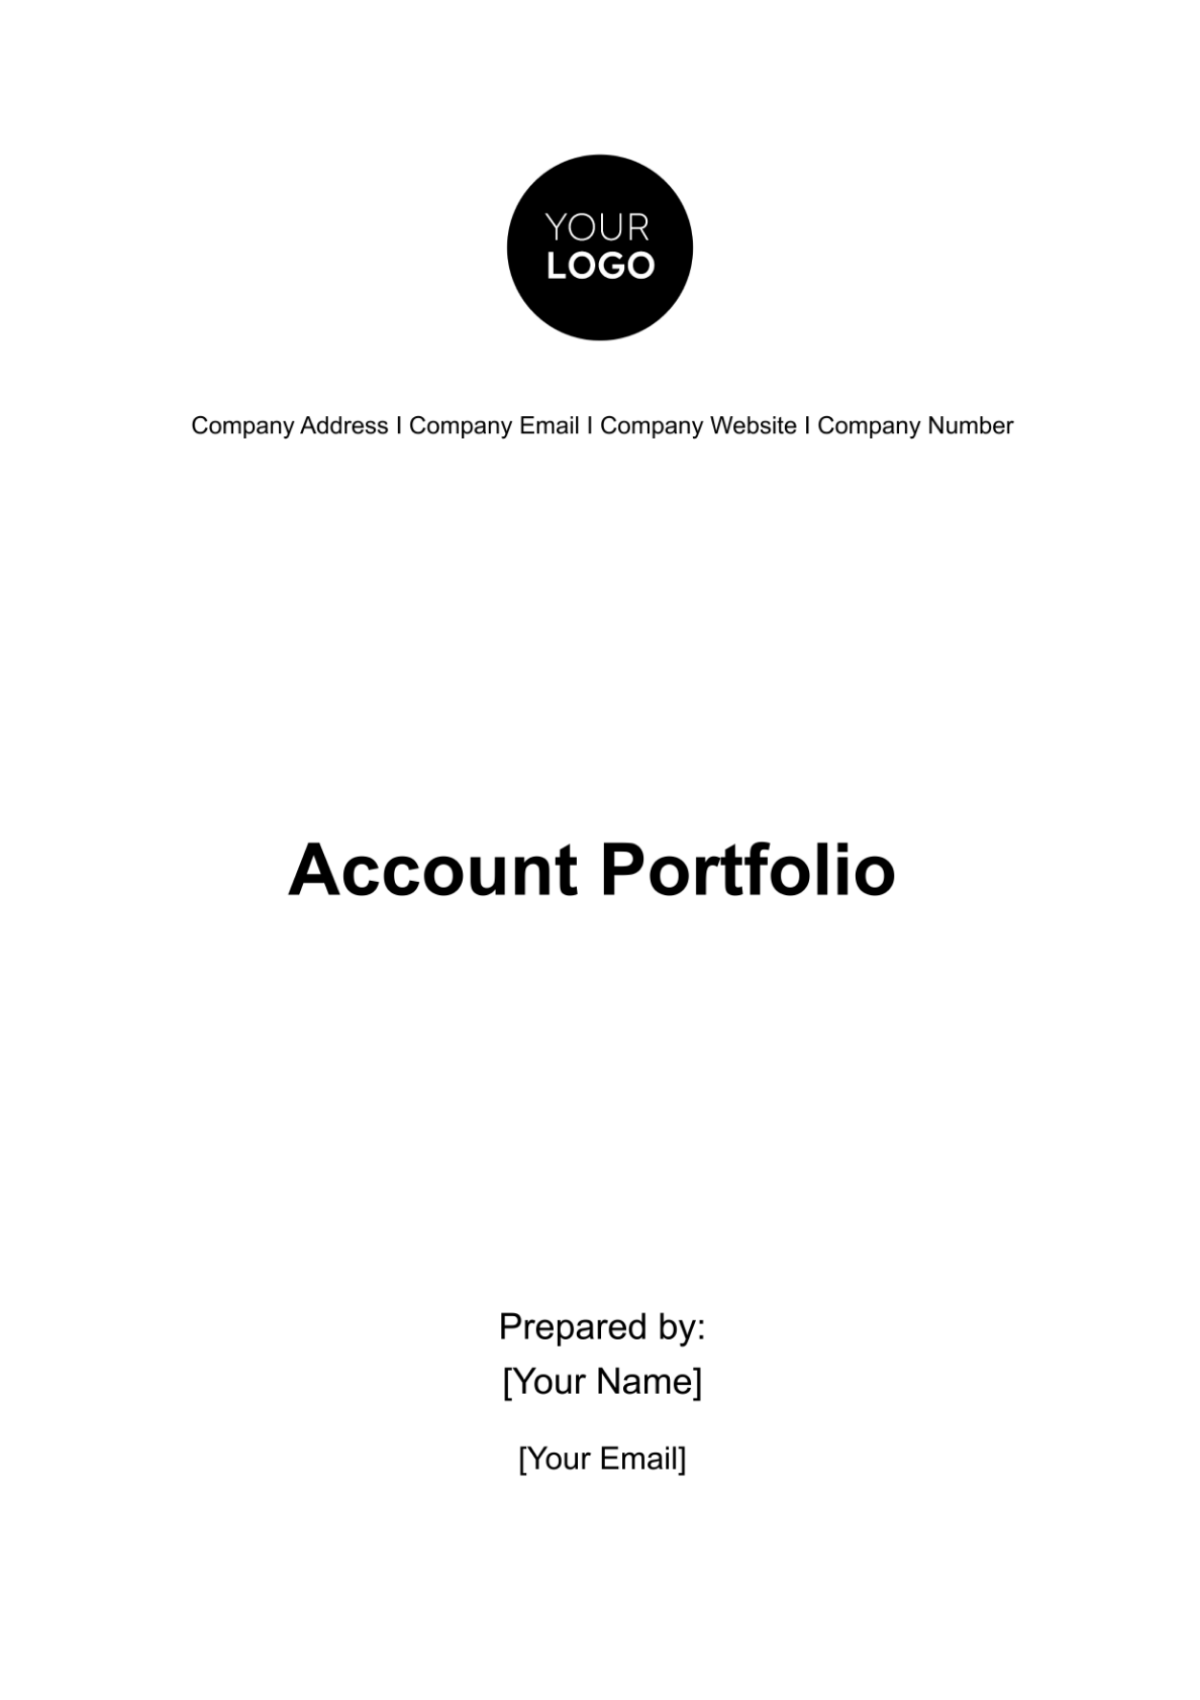 Account Portfolio Template